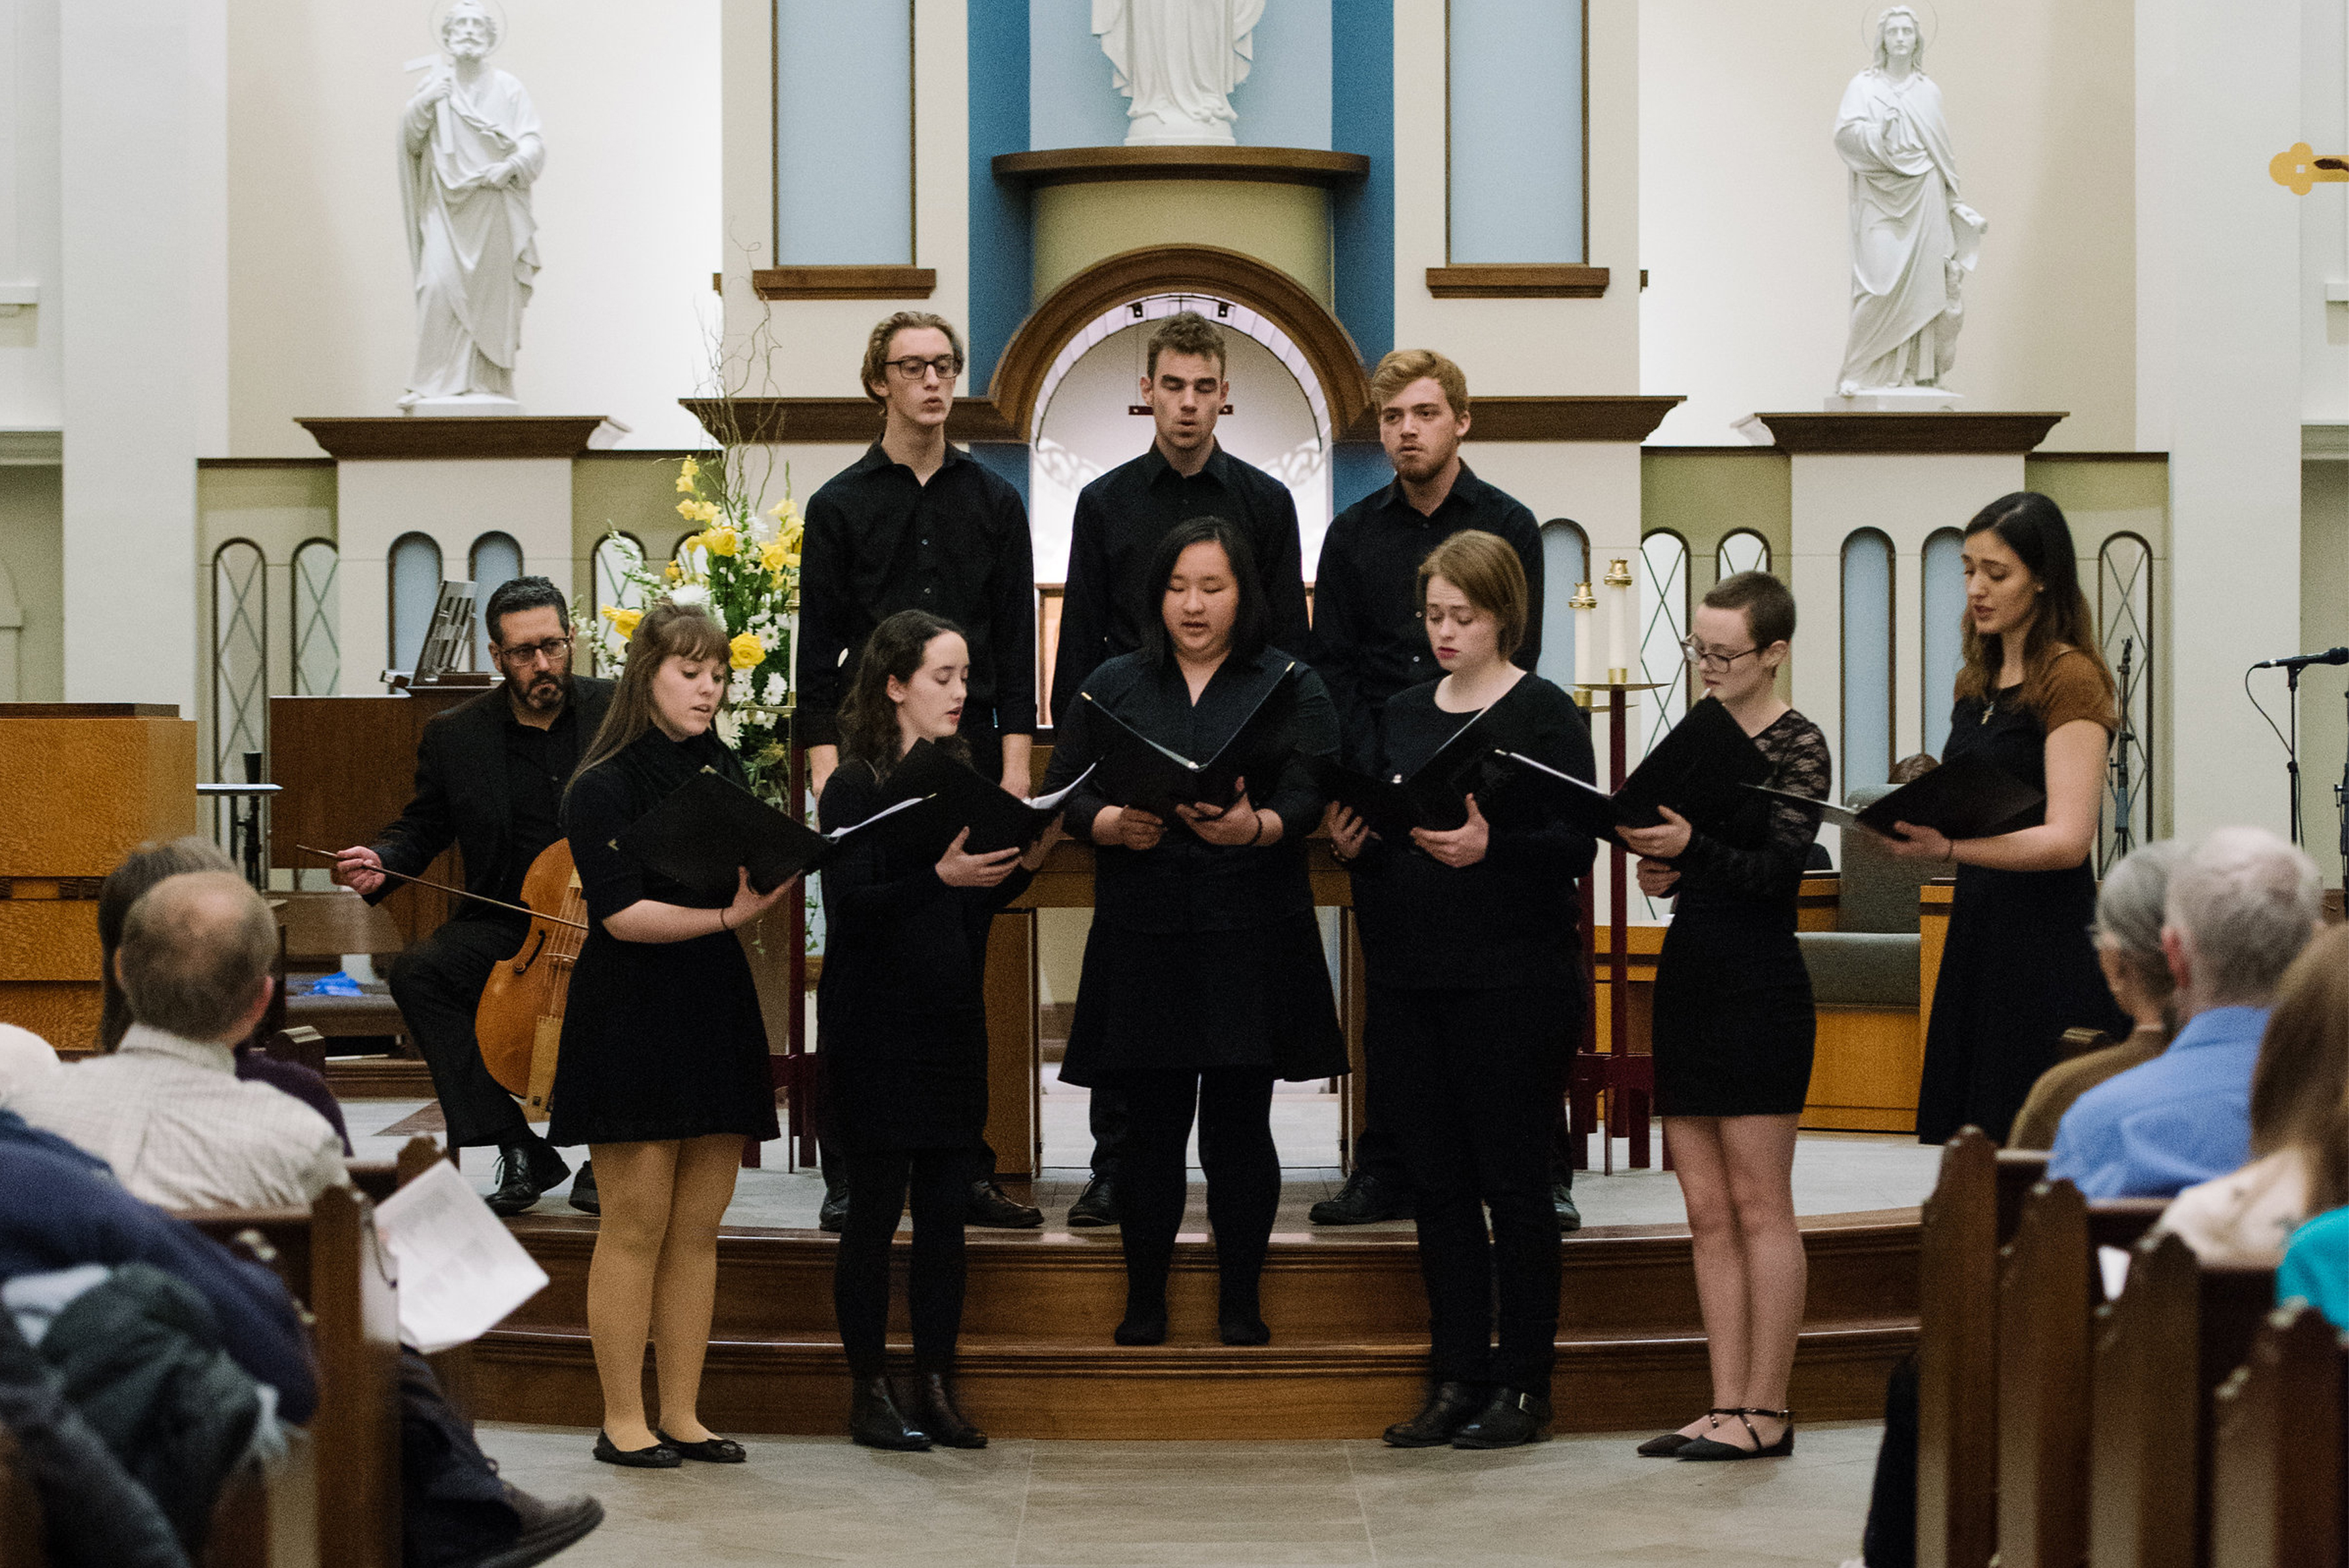 University of Dayton Early Music Ensemble performs their rendition of “O Quam Mirabilis Est” 